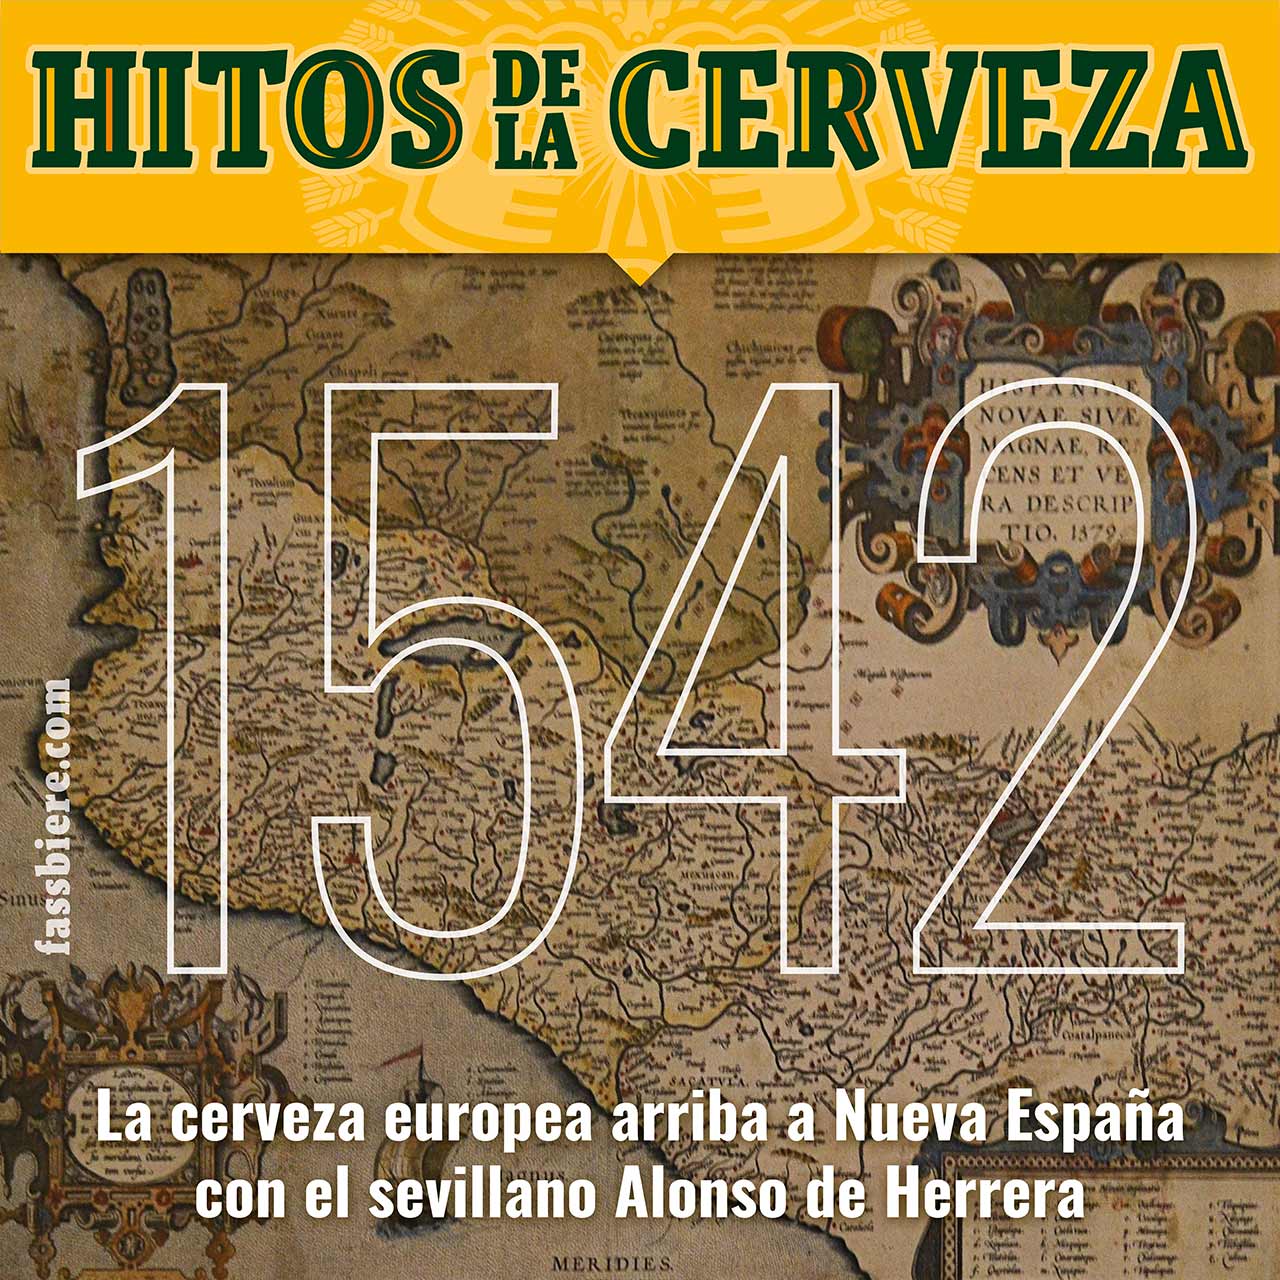 Hitos de la Cerveza en Fassbiere: En 1542, la cerveza europea arriba a Nueva España con Alonso de Herrera y el permiso de Carlos V